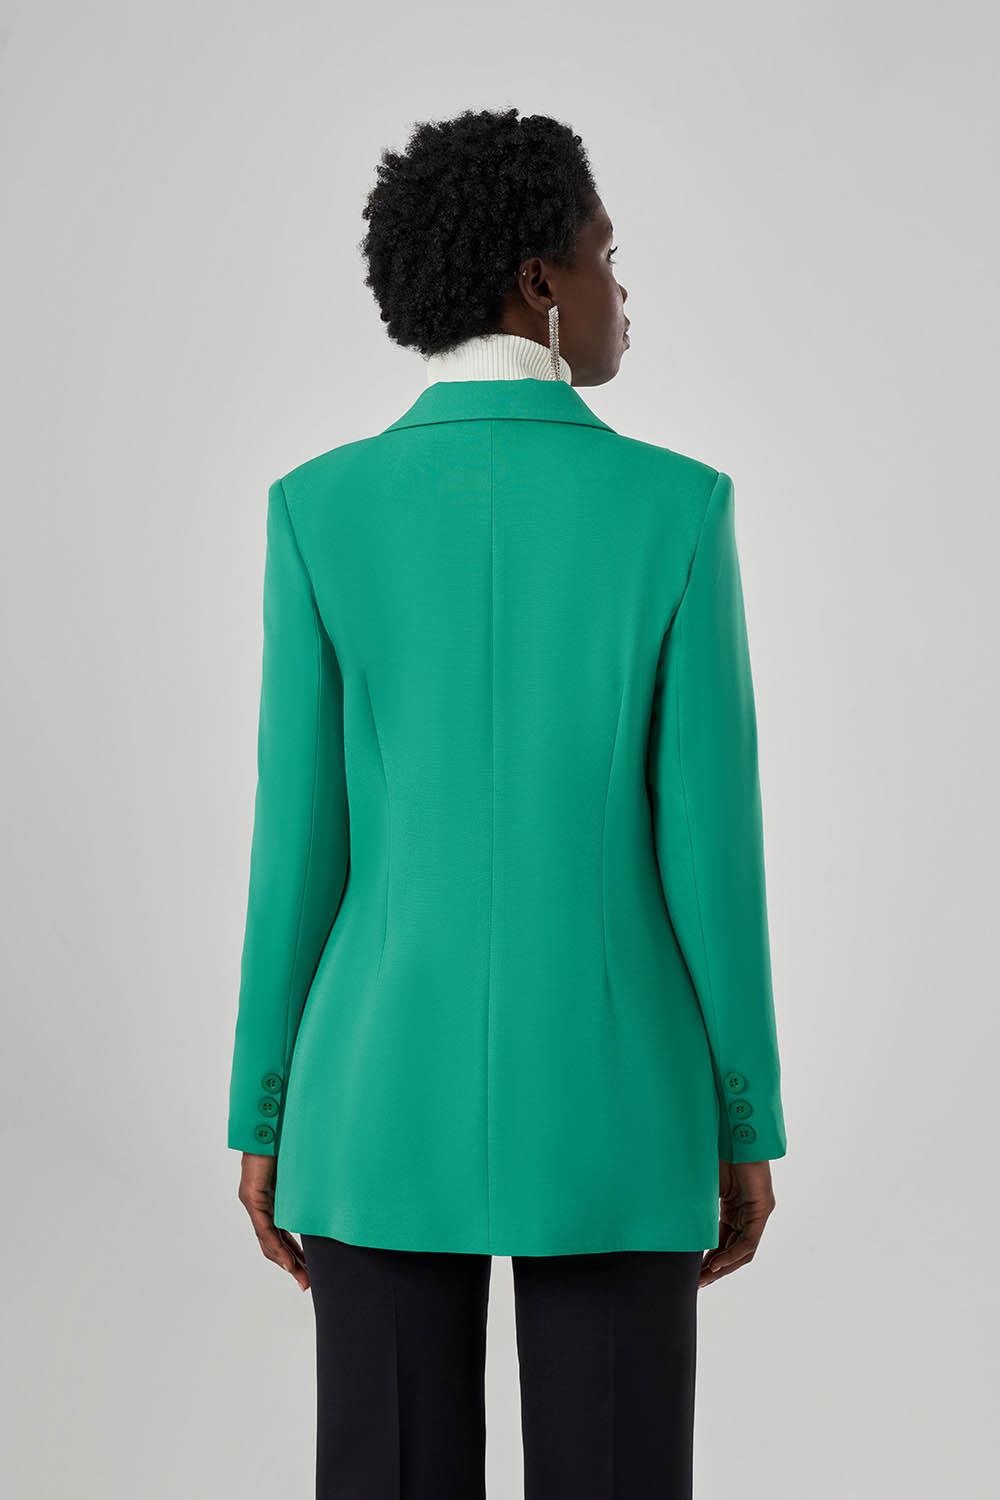 Double Basic Yeşil Ceket